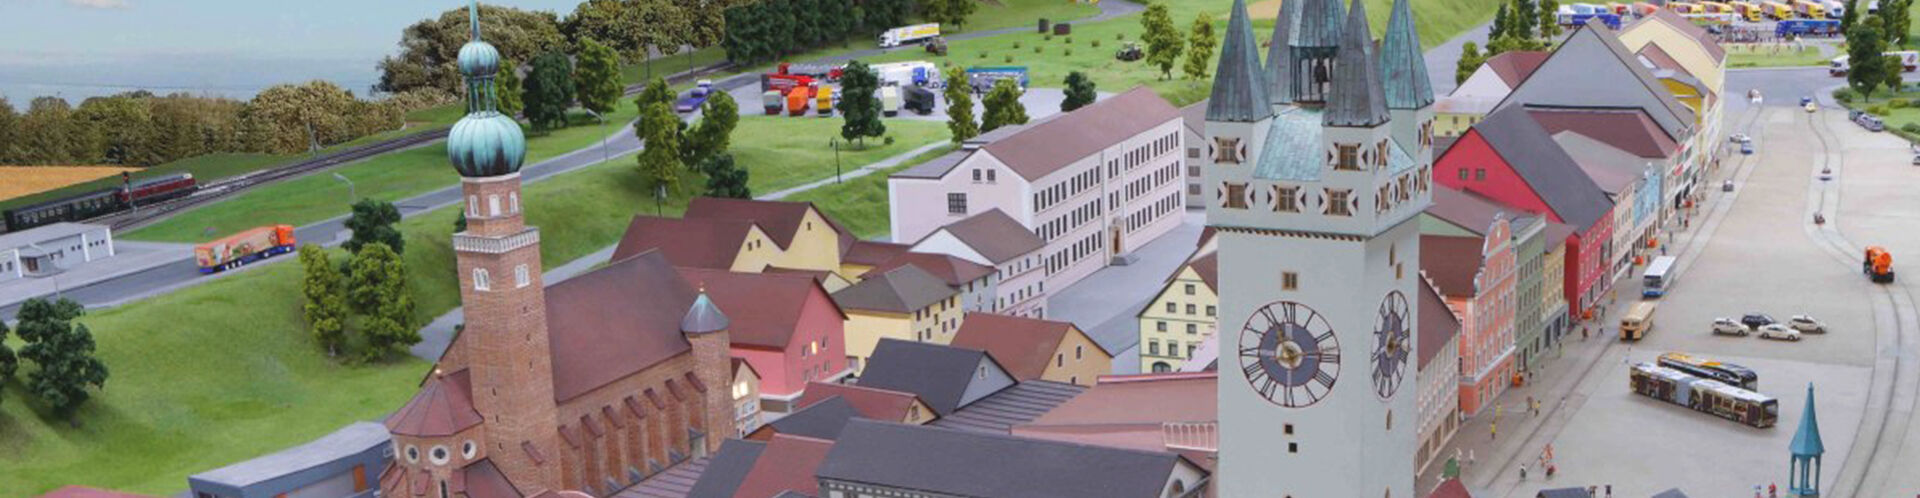 Sicht auf den Straubinger Stadtplatz als Modell im Bluebrix